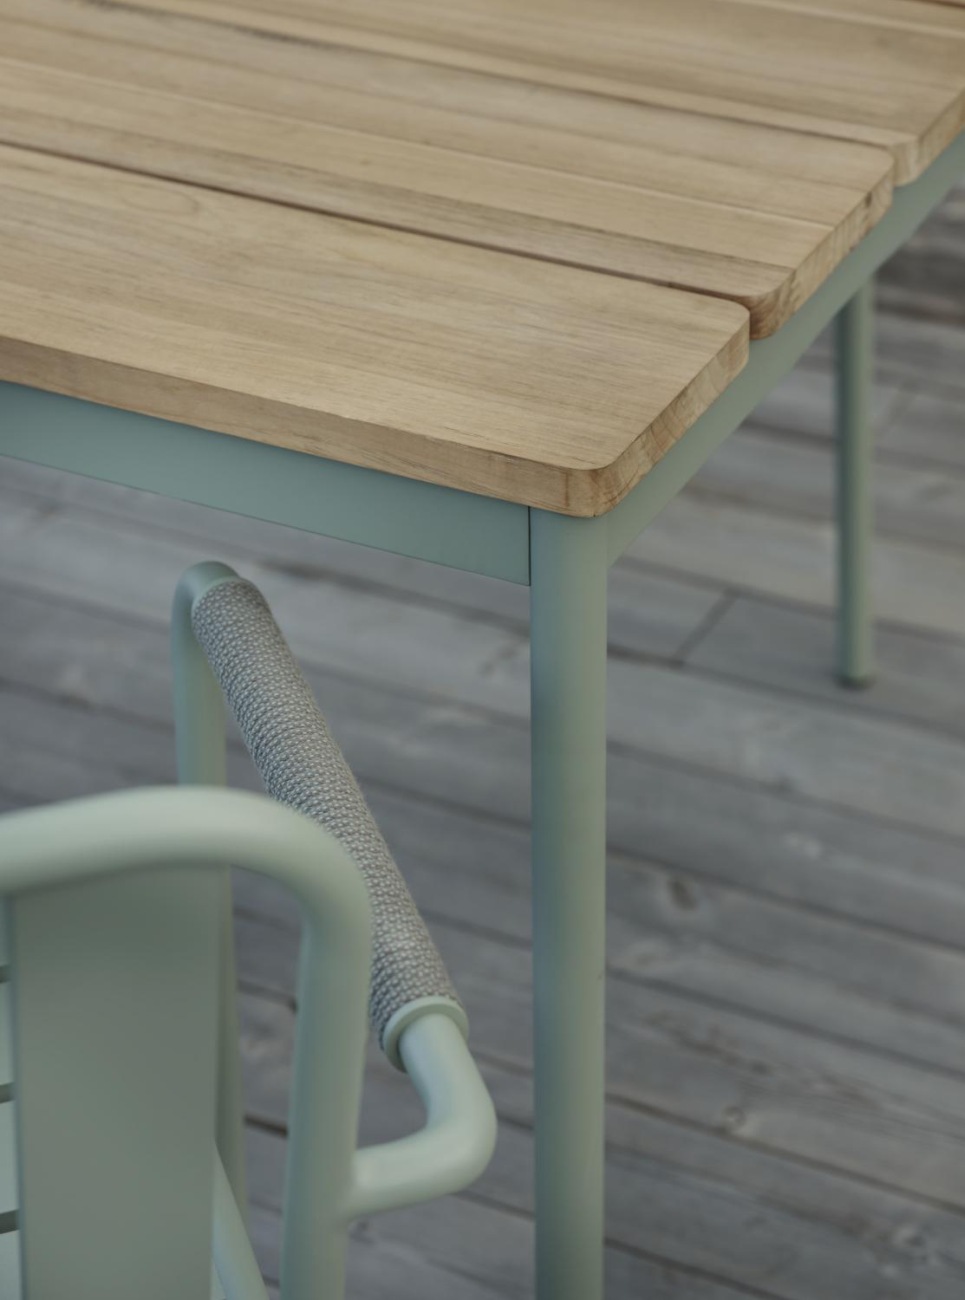 Der Gartenesstisch Nolli überzeugt mit seinem modernen Design. Gefertigt wurde die Tischplatte aus Teakholz und hat einen natürlichen Farbton. Das Gestell ist auch aus Metall und hat eine grüne Farbe. Der Tisch besitzt eine Länge von 240 cm.